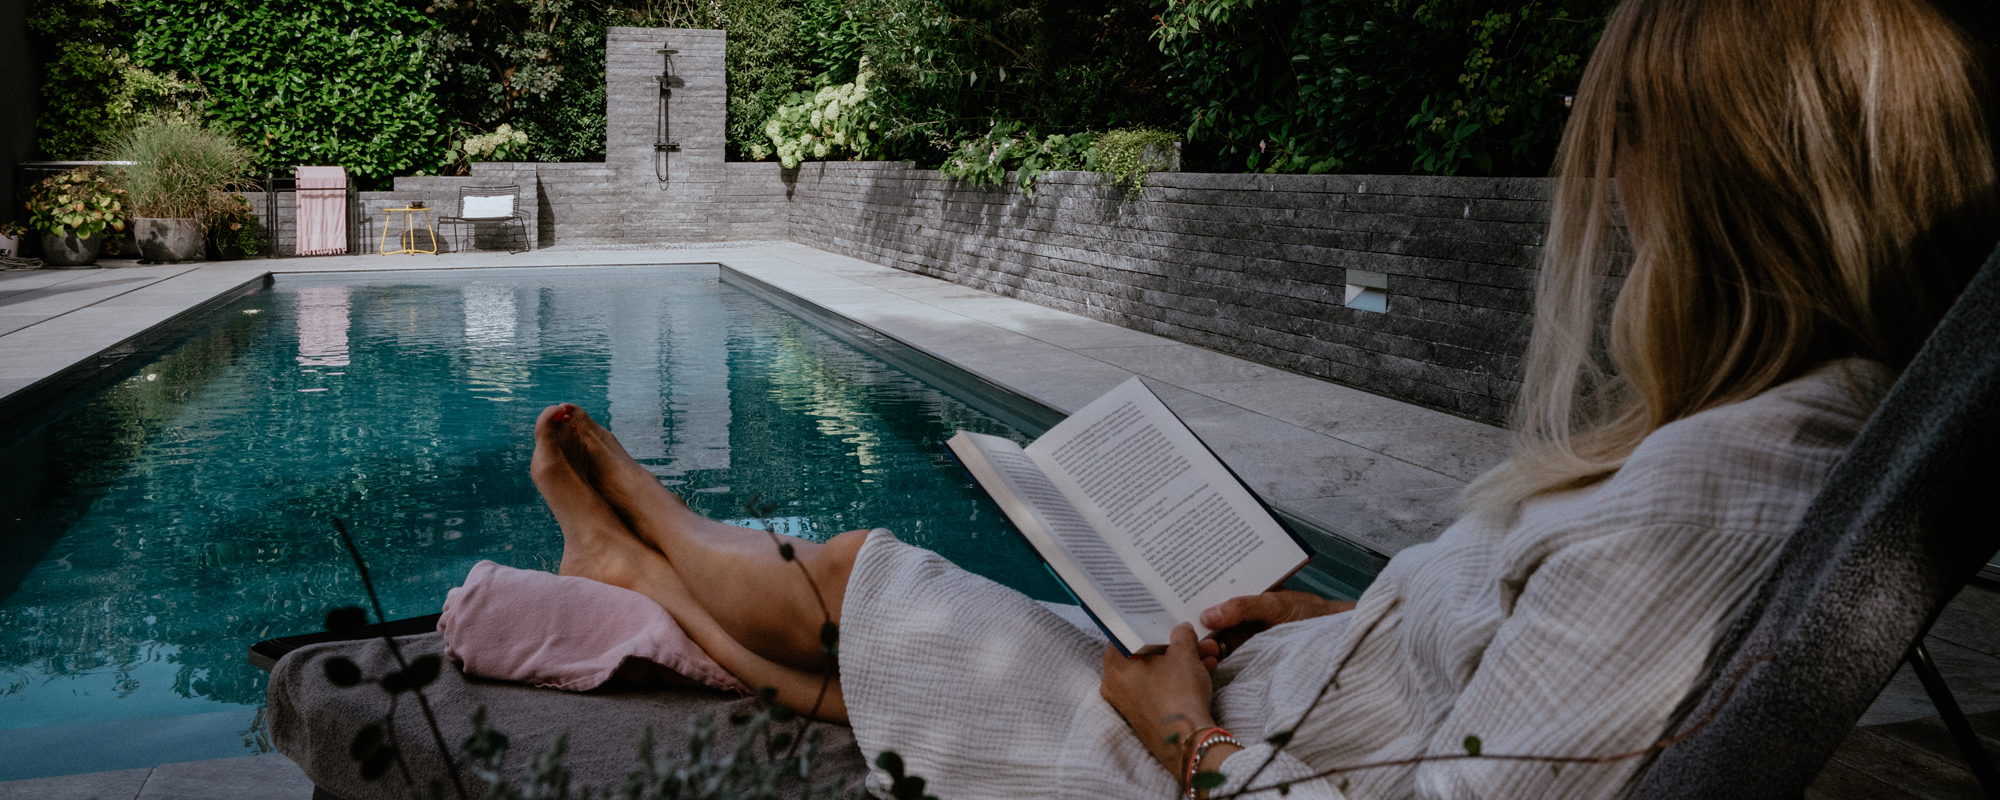 Eine Frau sitzt am Pool auf einer Liege und liest ein Buch.